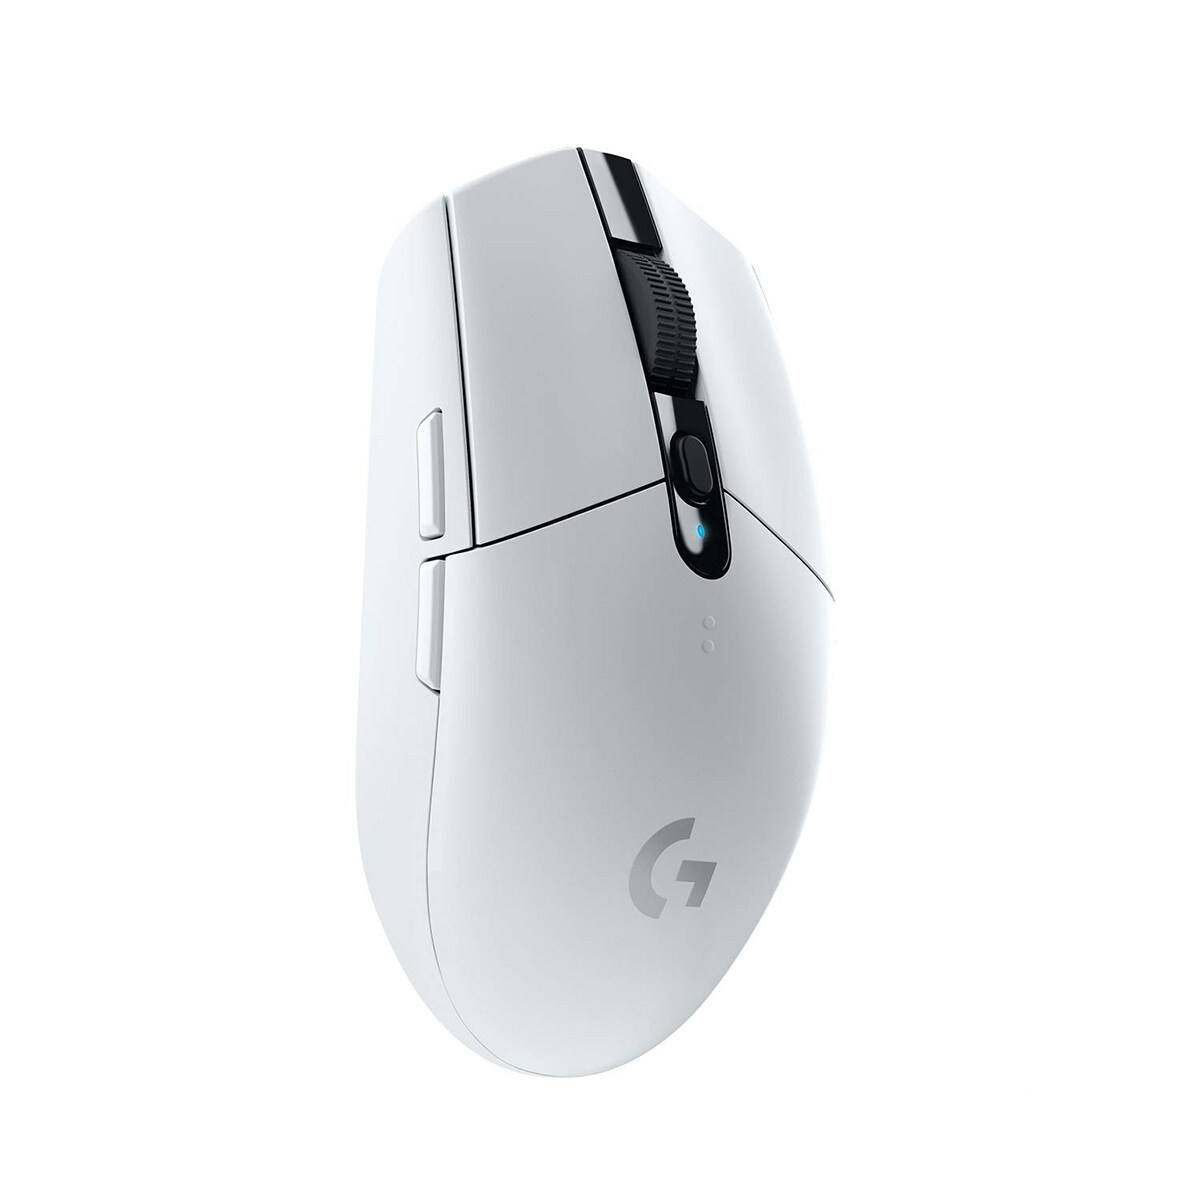 Logitech Wireless Gaming Mouse G304 with Lightspeed Wireless, 12k Hero Sensor, 6 Programmable Buttons, Lightweight, Logitech G-Hub Support (910-005284)